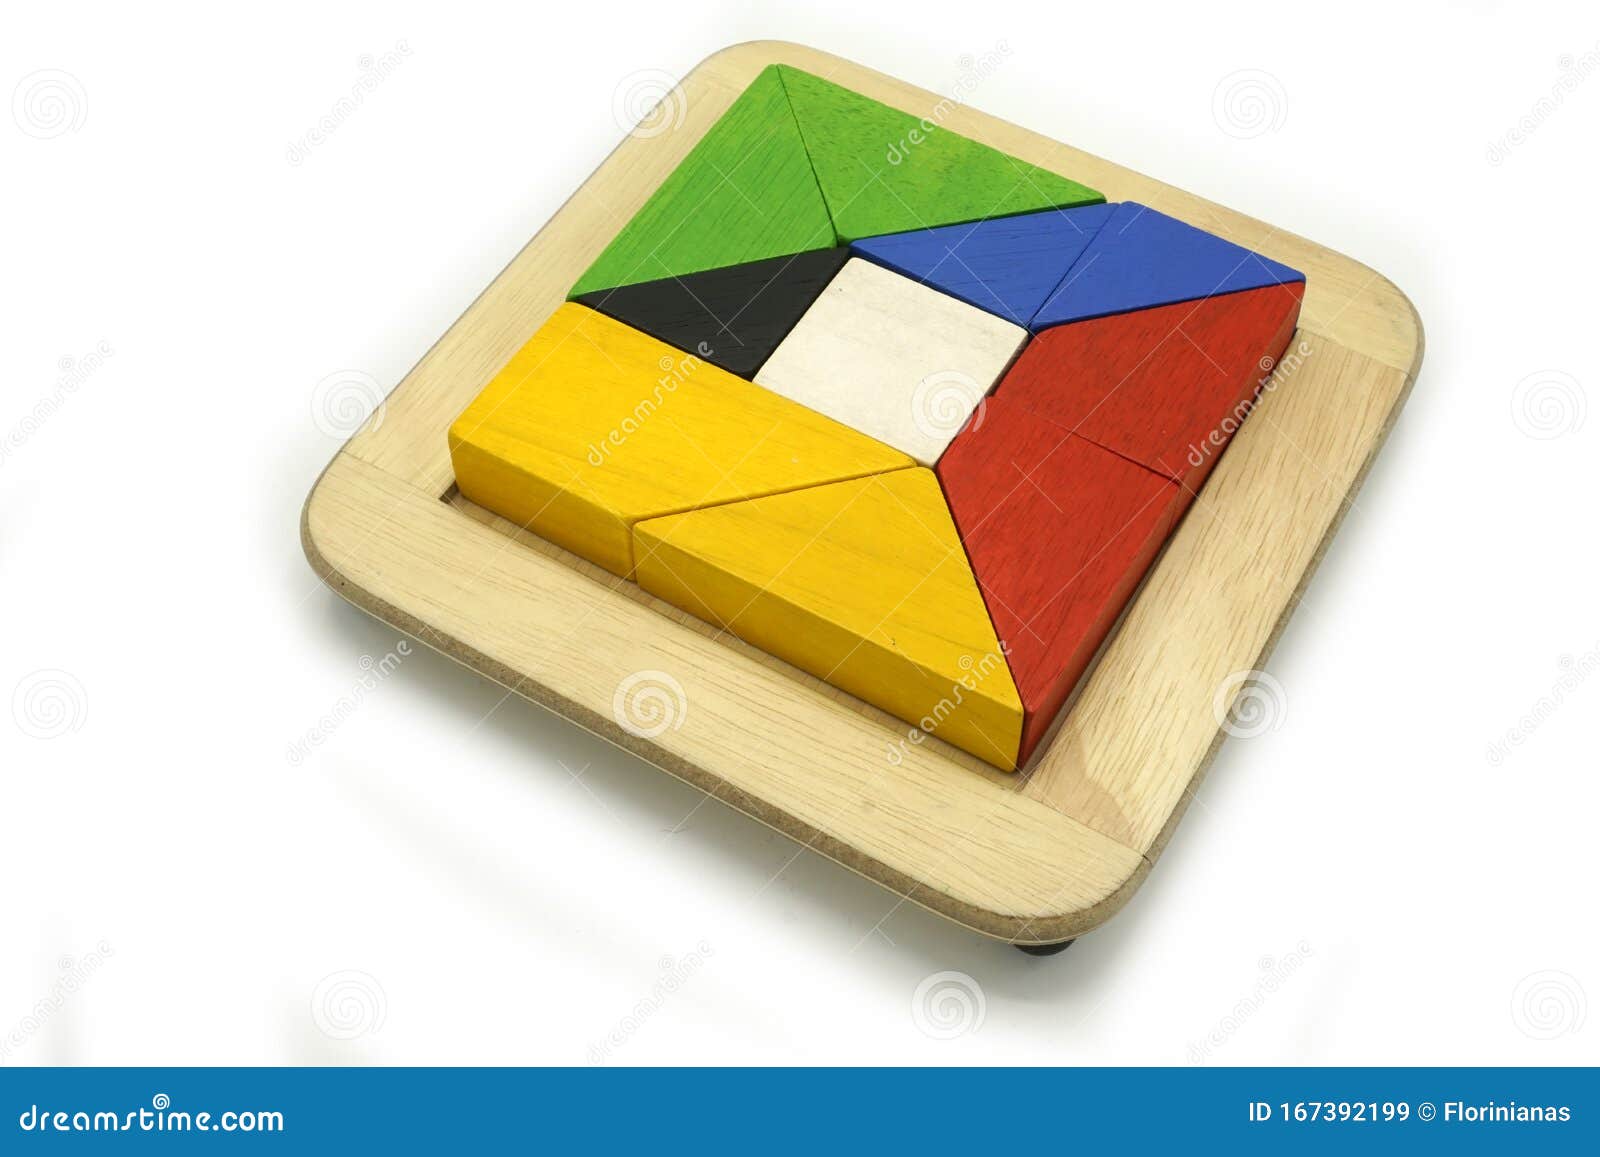 Pt colorido crianças quebra-cabeça jogo de madeira lógica jogo